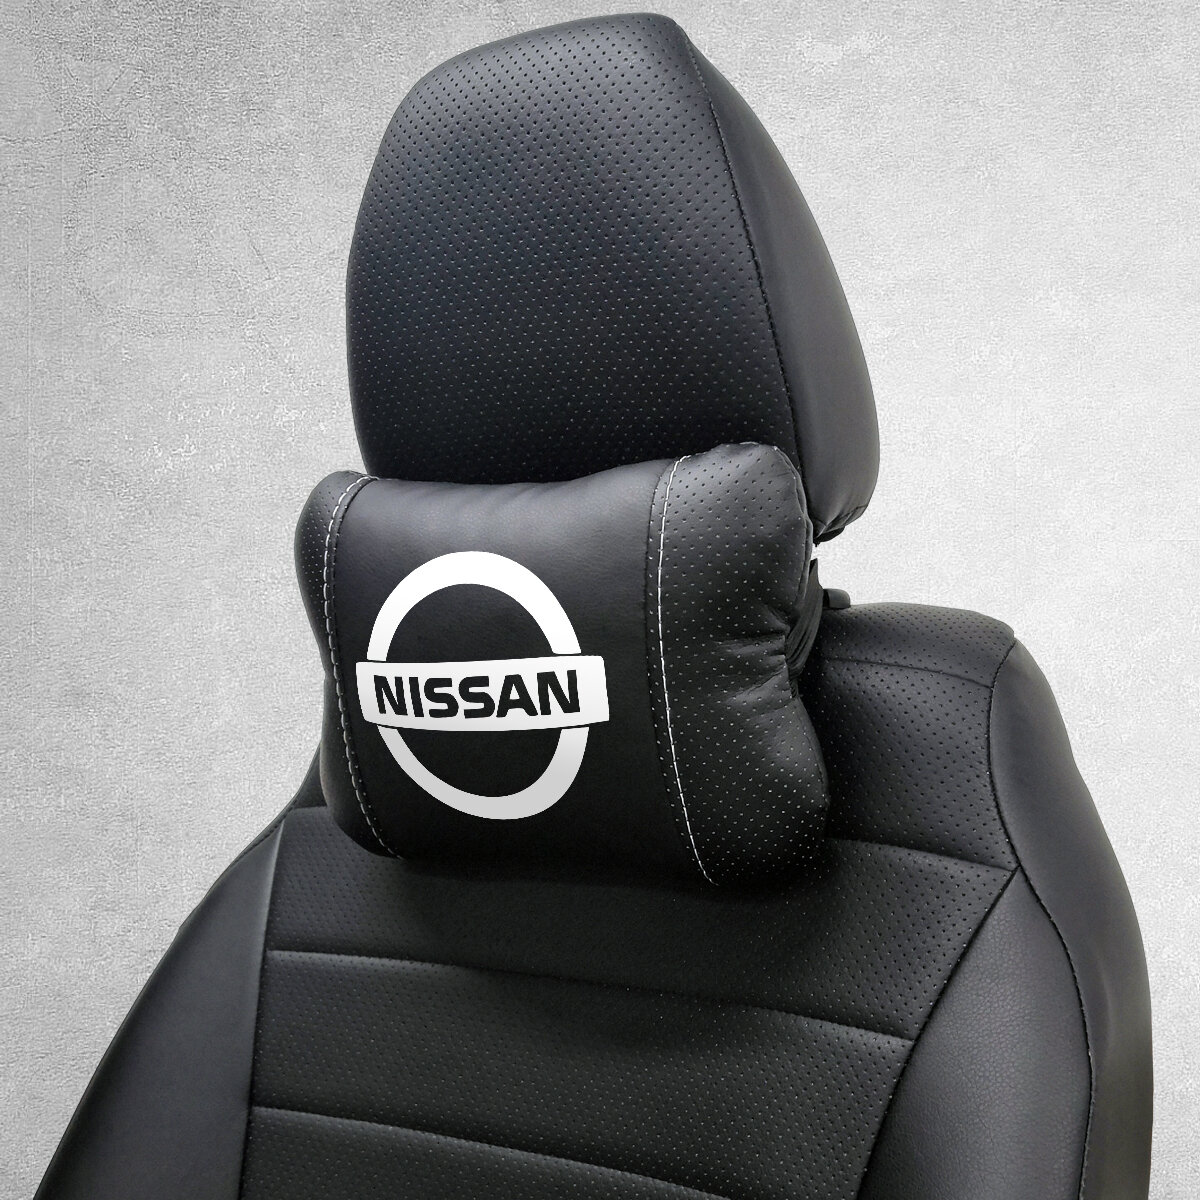 Автомобильная подушка под шею на подголовник эмблема Nissan, для Ниссан. Подушка для шеи в машину. Подушка на сиденье автомобиля.